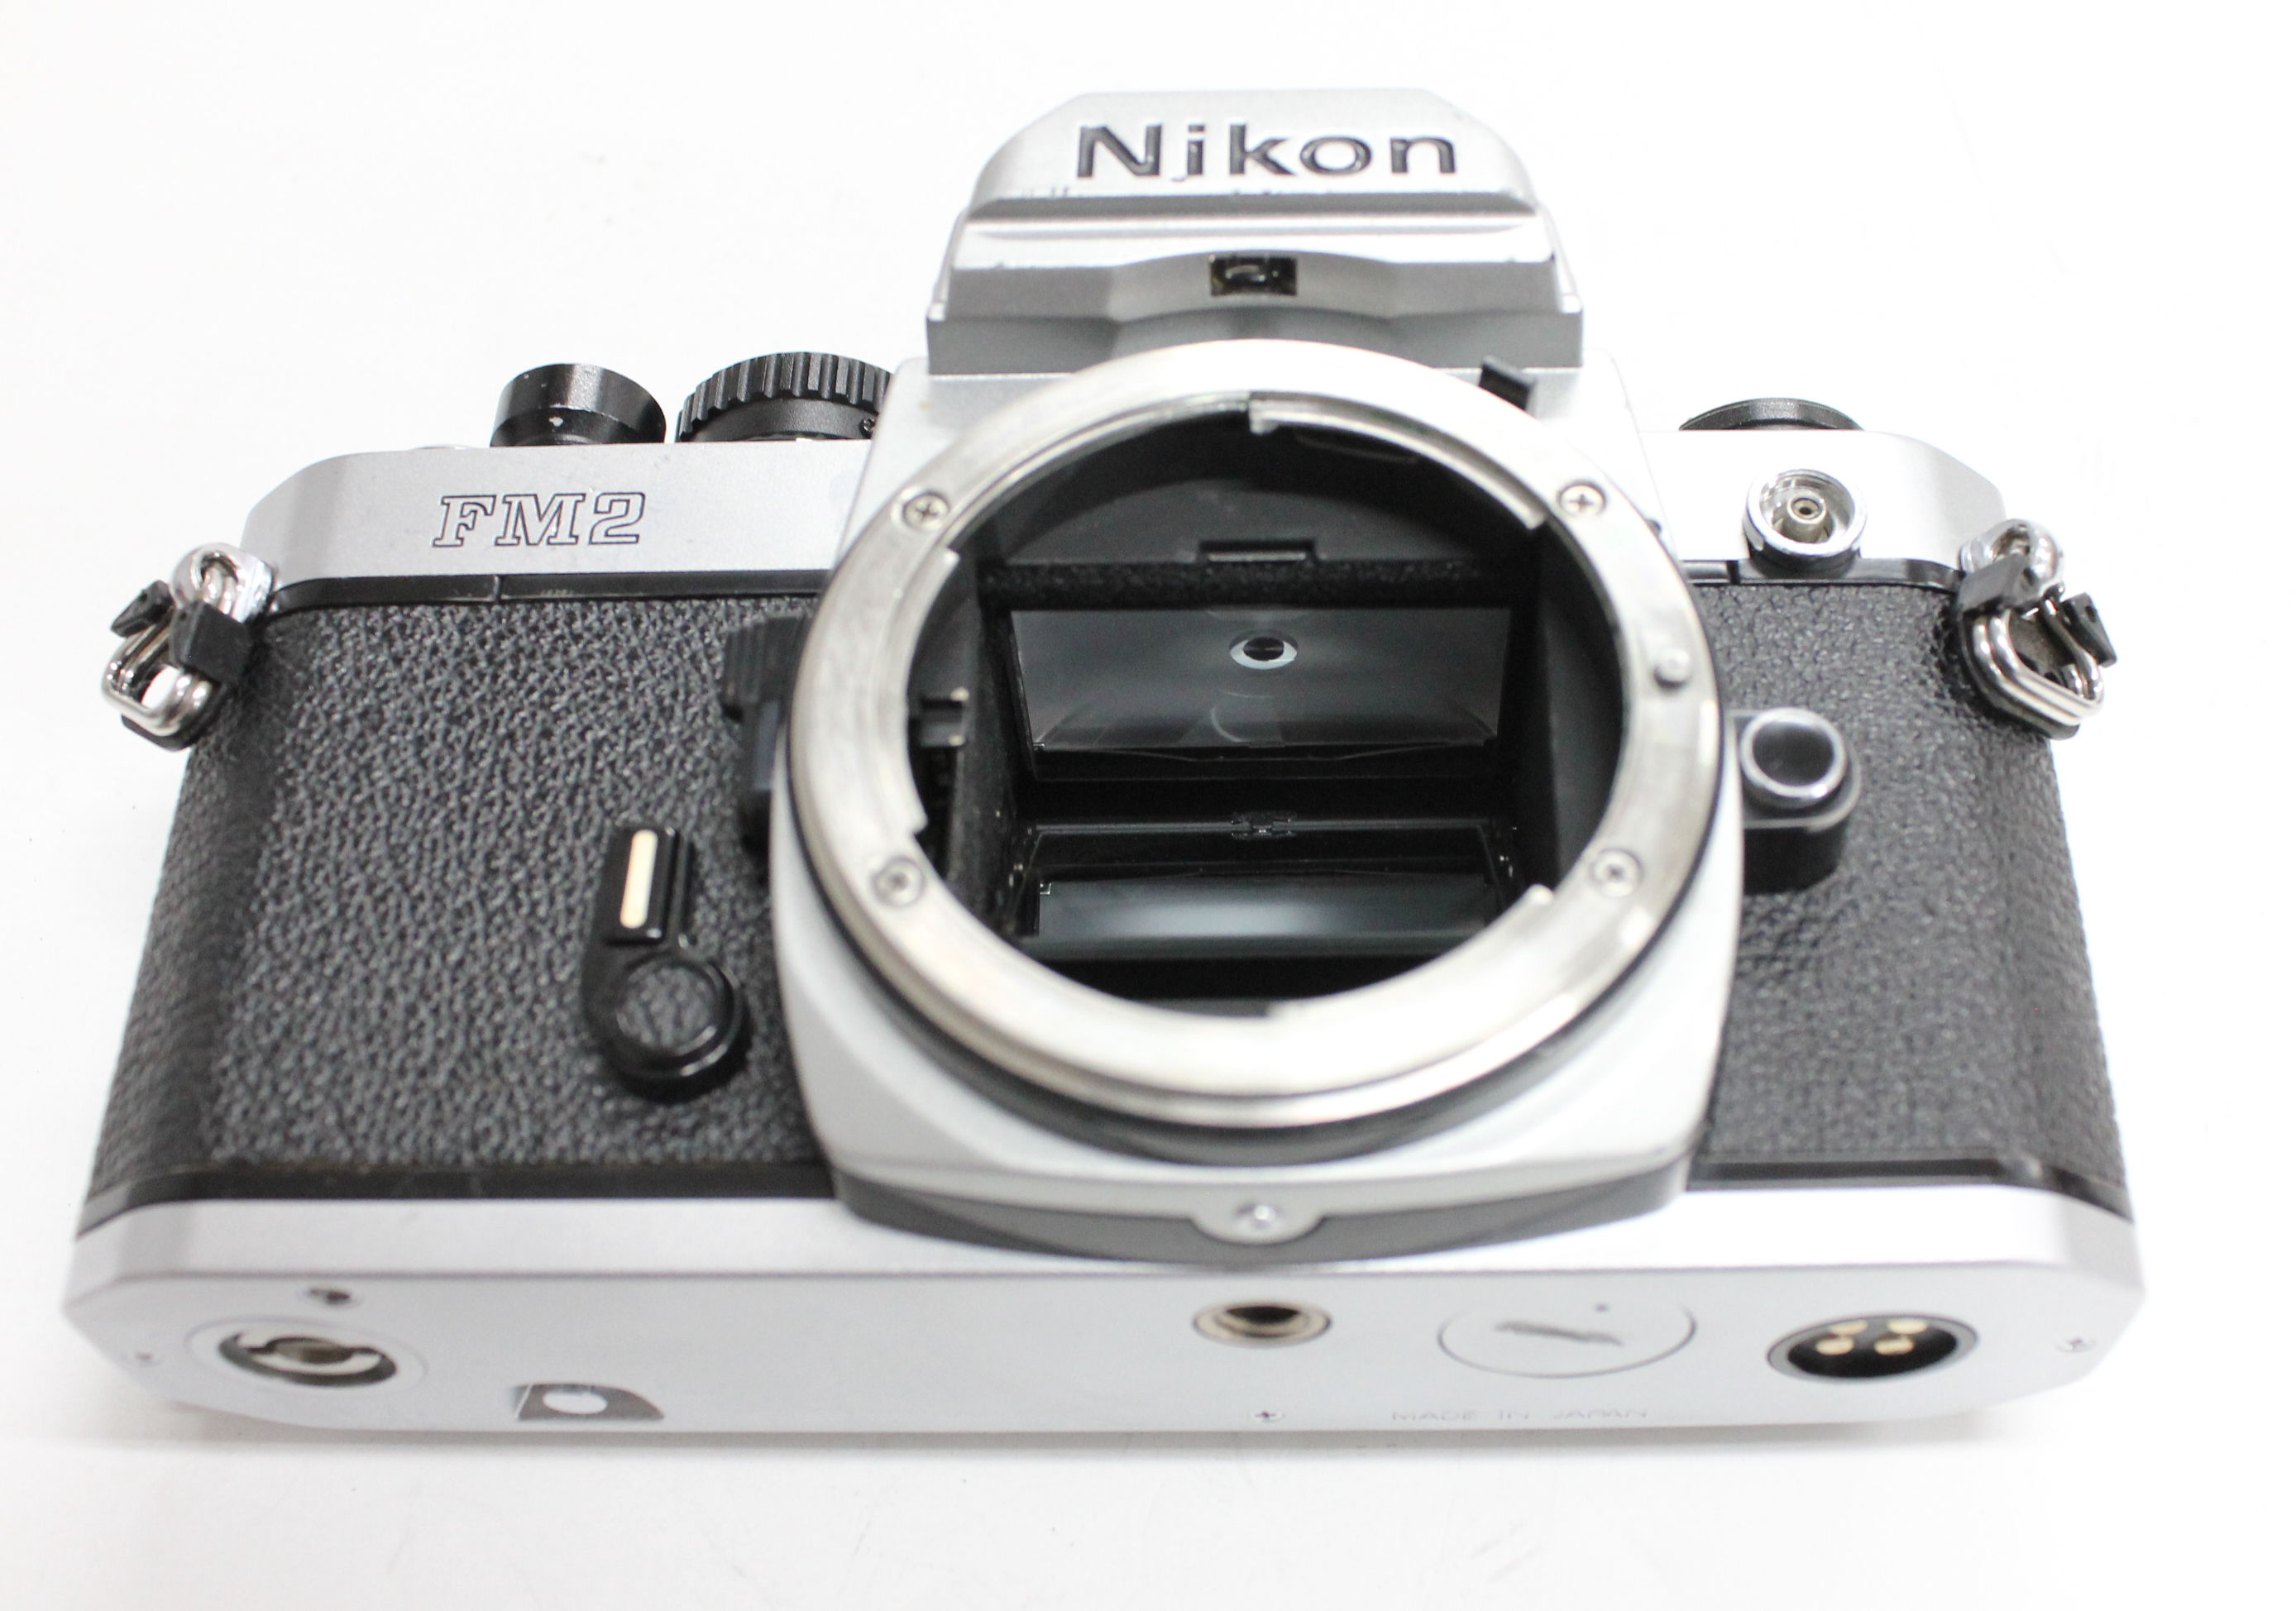 Nikon New FM2 FM2N Camera w/Ai-s 50mm F/1.4 Lens from Japan (C1164 